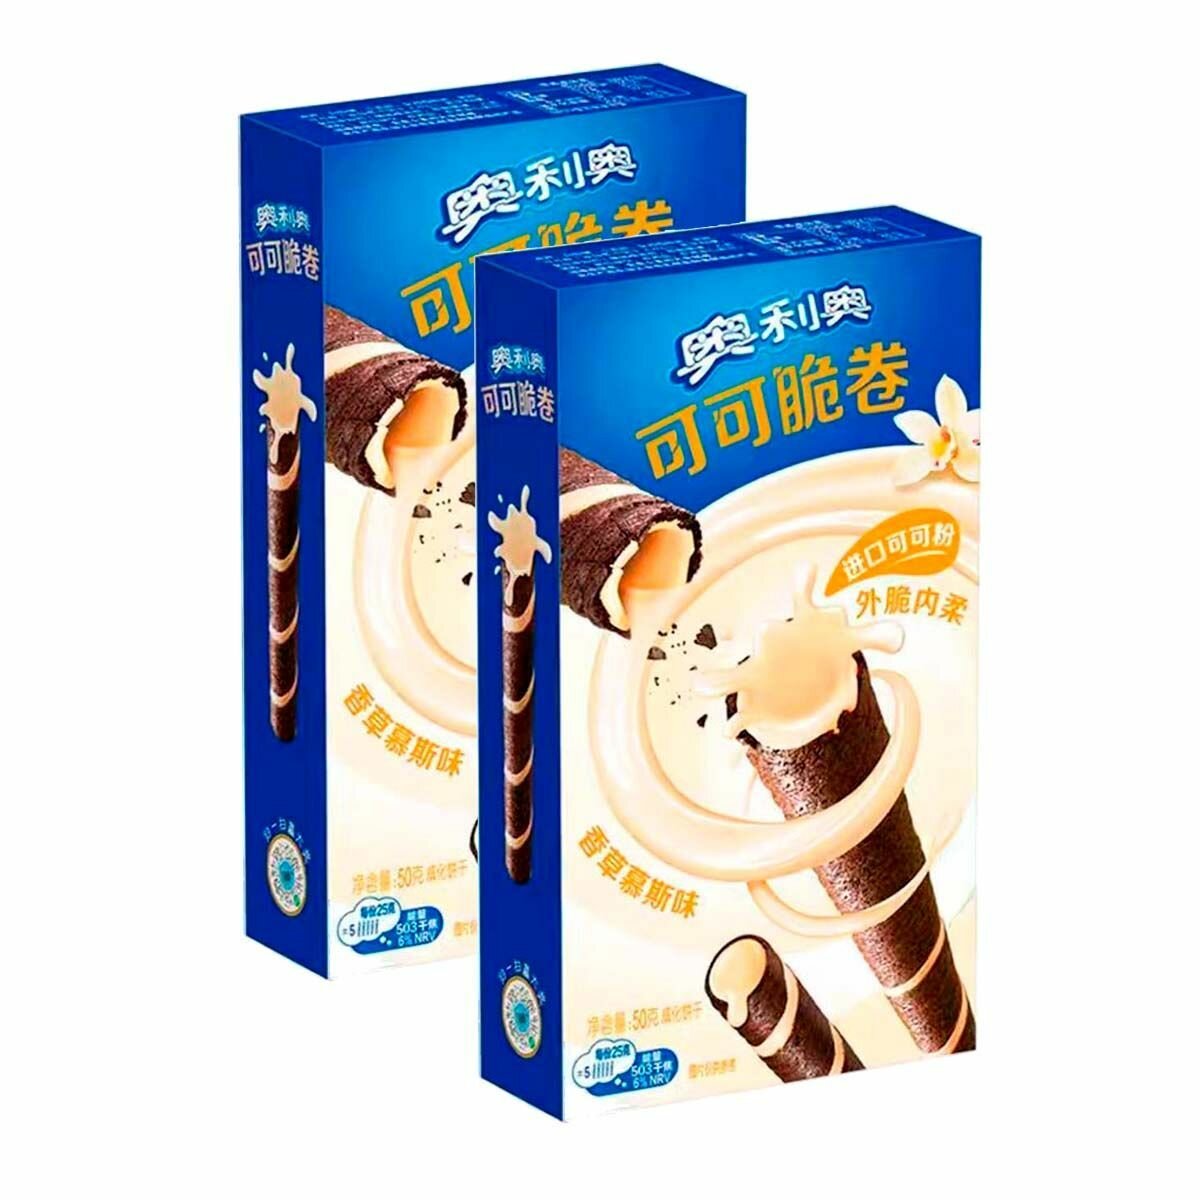 Вафельные трубочки OREO Wafer Roll Vanilla со вкусом ванили (Китай), 50 г (2 шт)